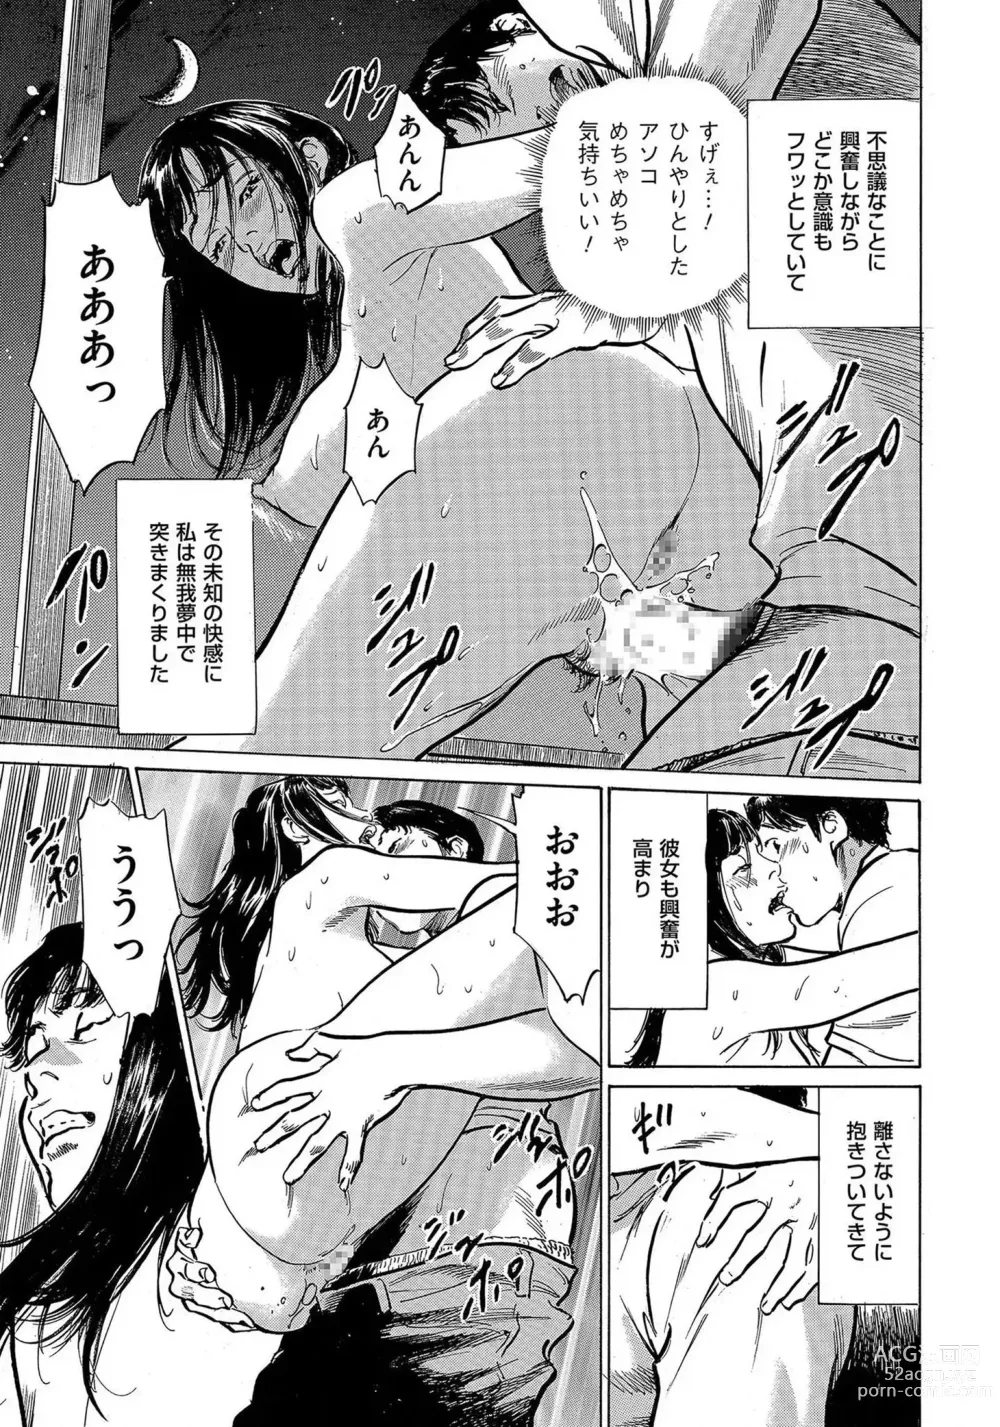 Page 32 of manga Saikou ni Toroketa Honki de Honto no Hanashi 16 episodes